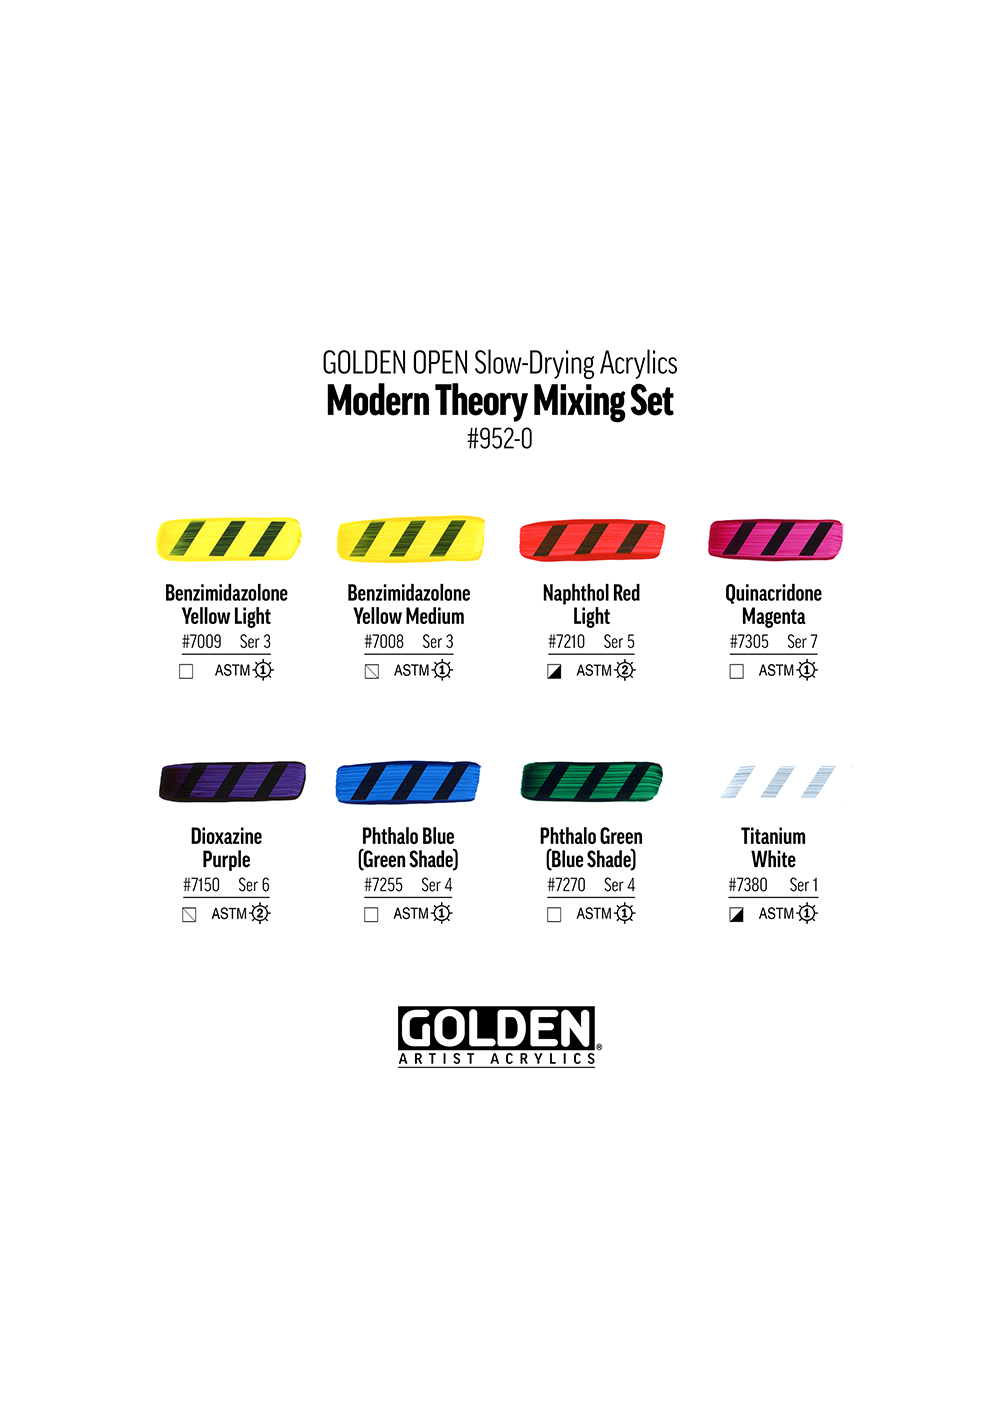 Acrílico Golden OPEN Secado Lento Set Teoría Moderna 0000952-0